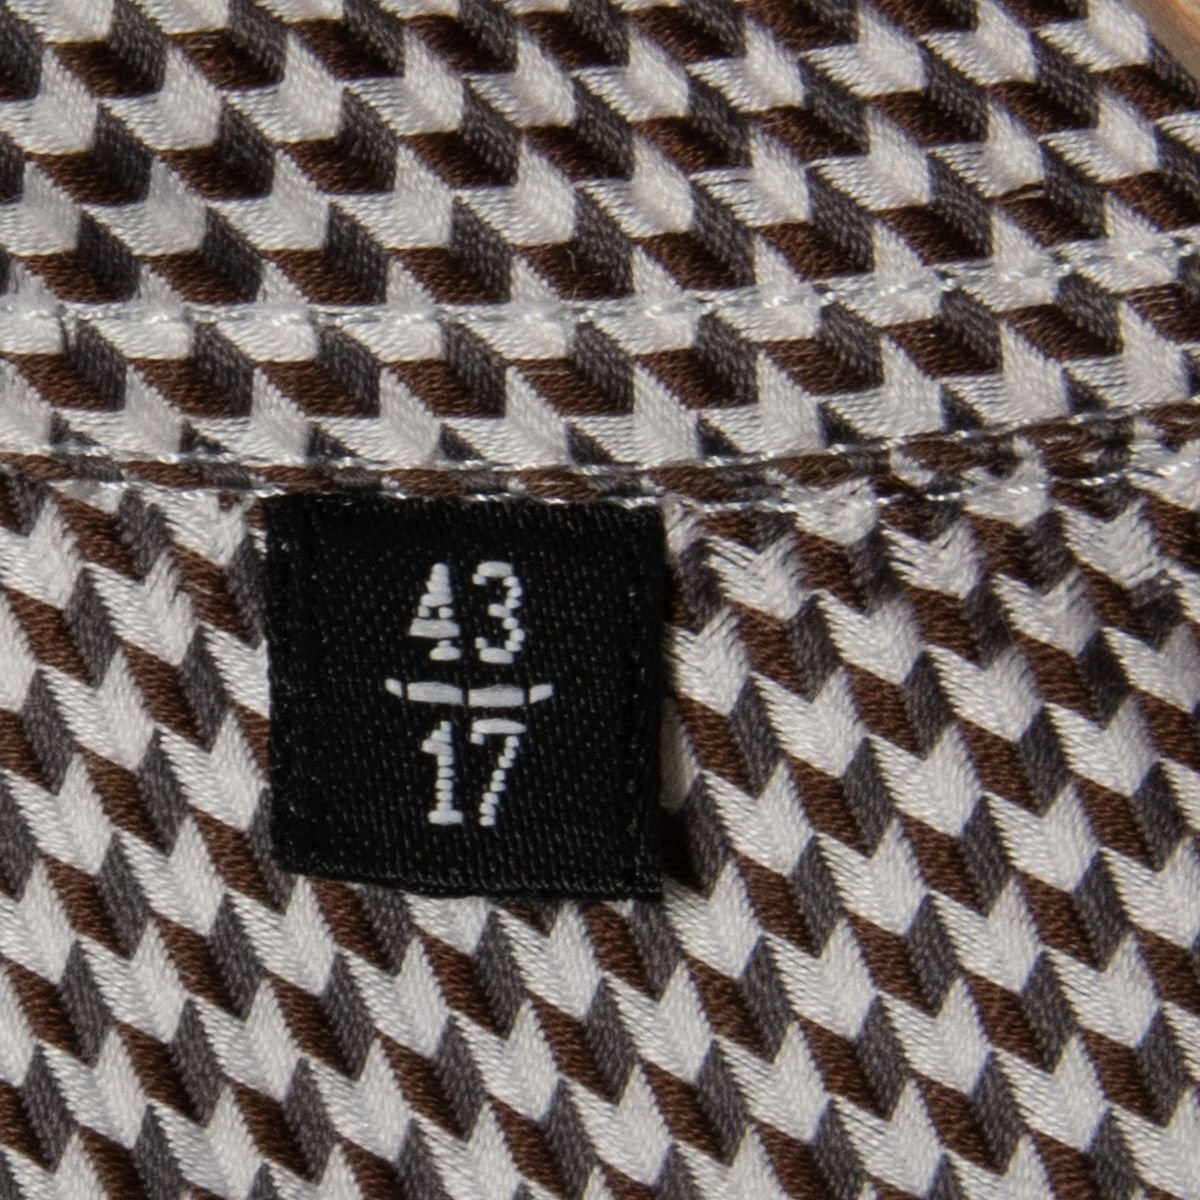 [1 иен старт ]GIORGIO ARMANIjoru geo Armani рубашка с длинным рукавом tops хлопок 100% высокий бренд Basic общий рисунок серый серия 43 Италия производства 